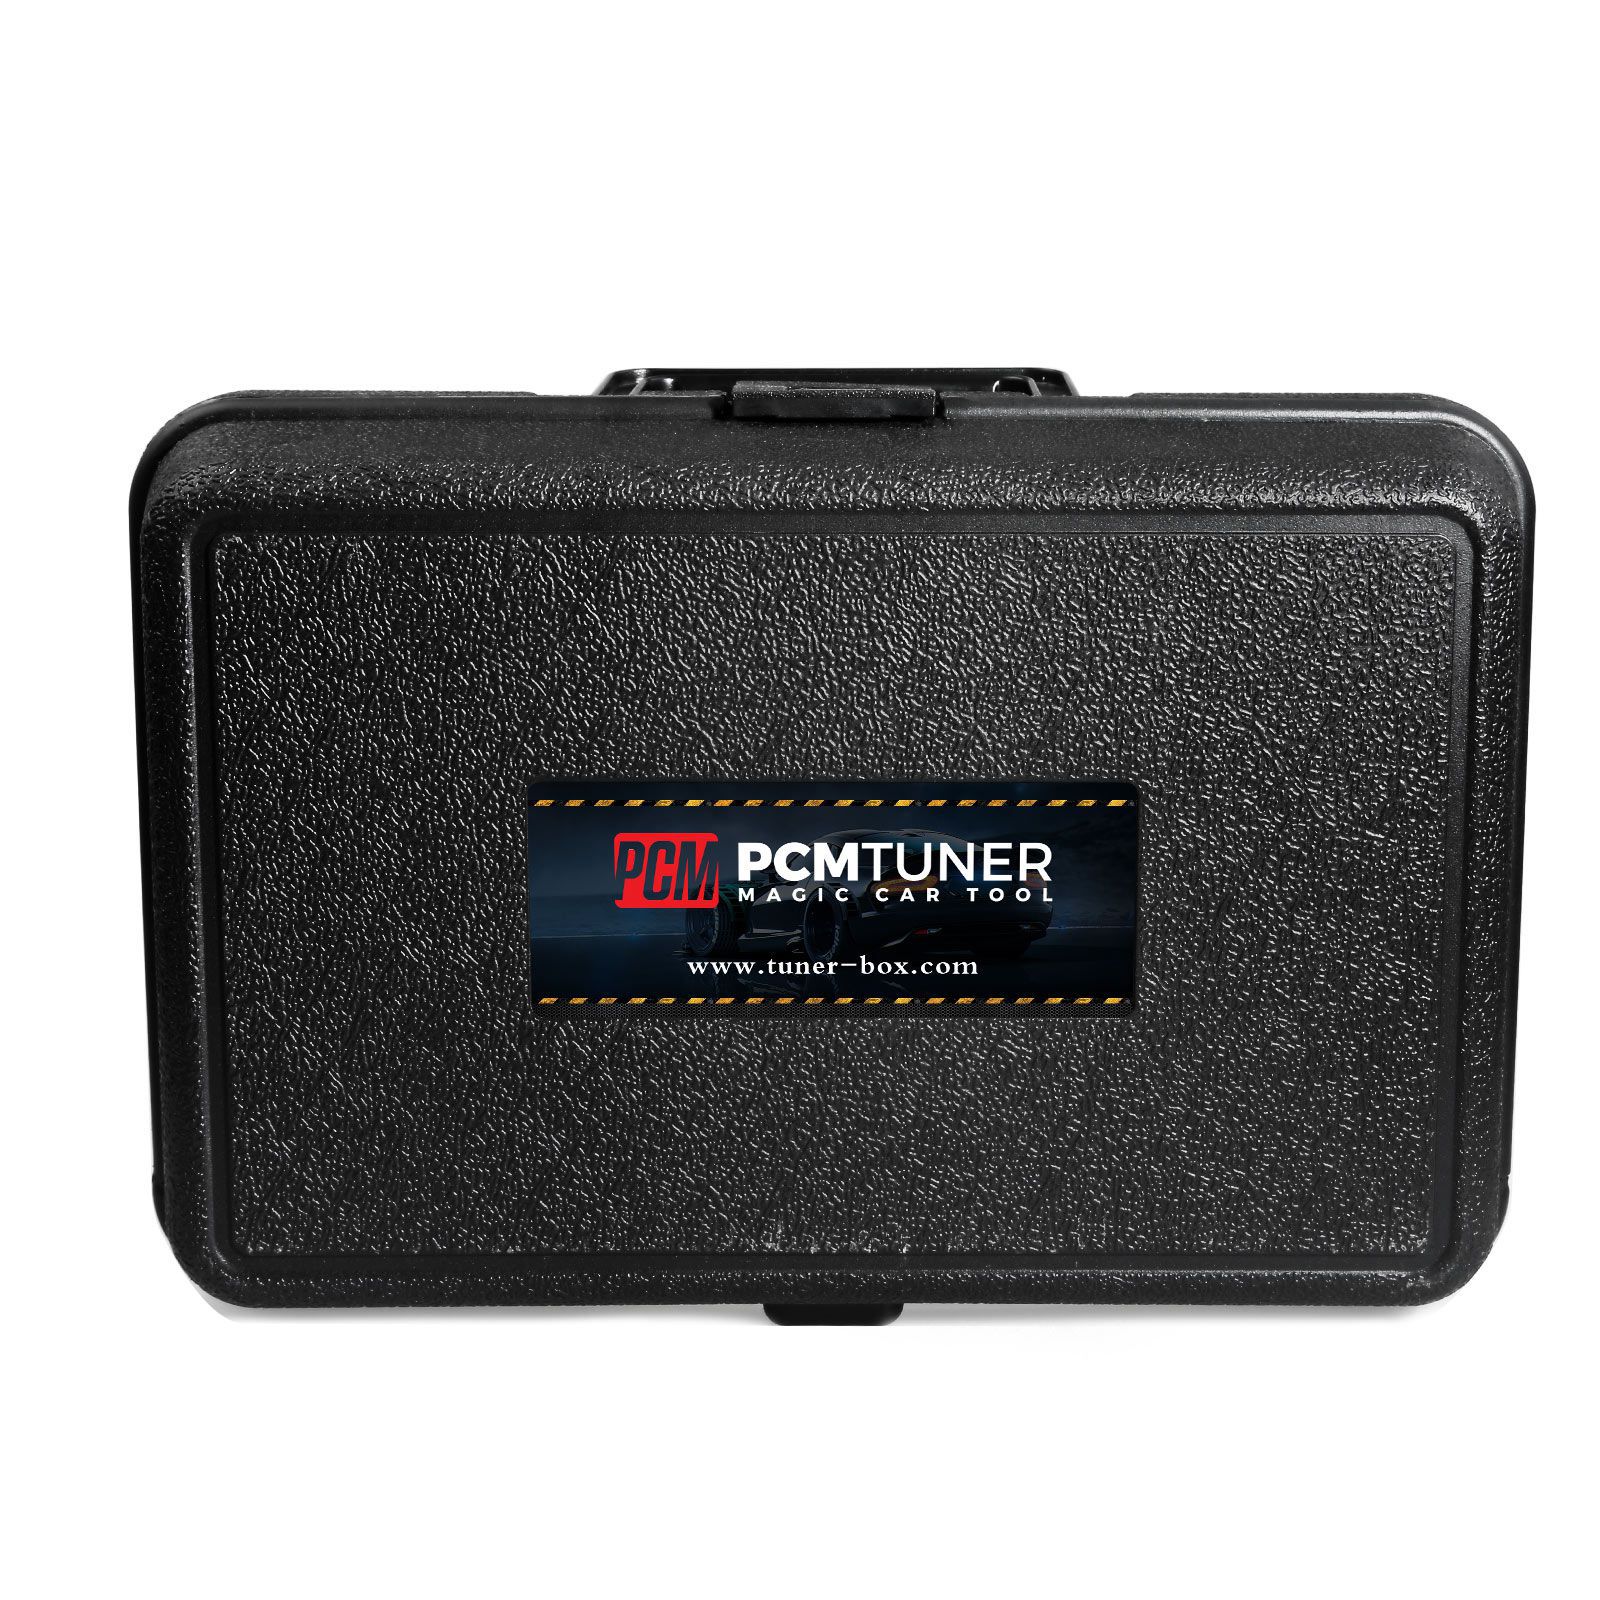 Programador PCMtuner ECU com 67 módulos com caixa de silicone e caixa de transporte plástica